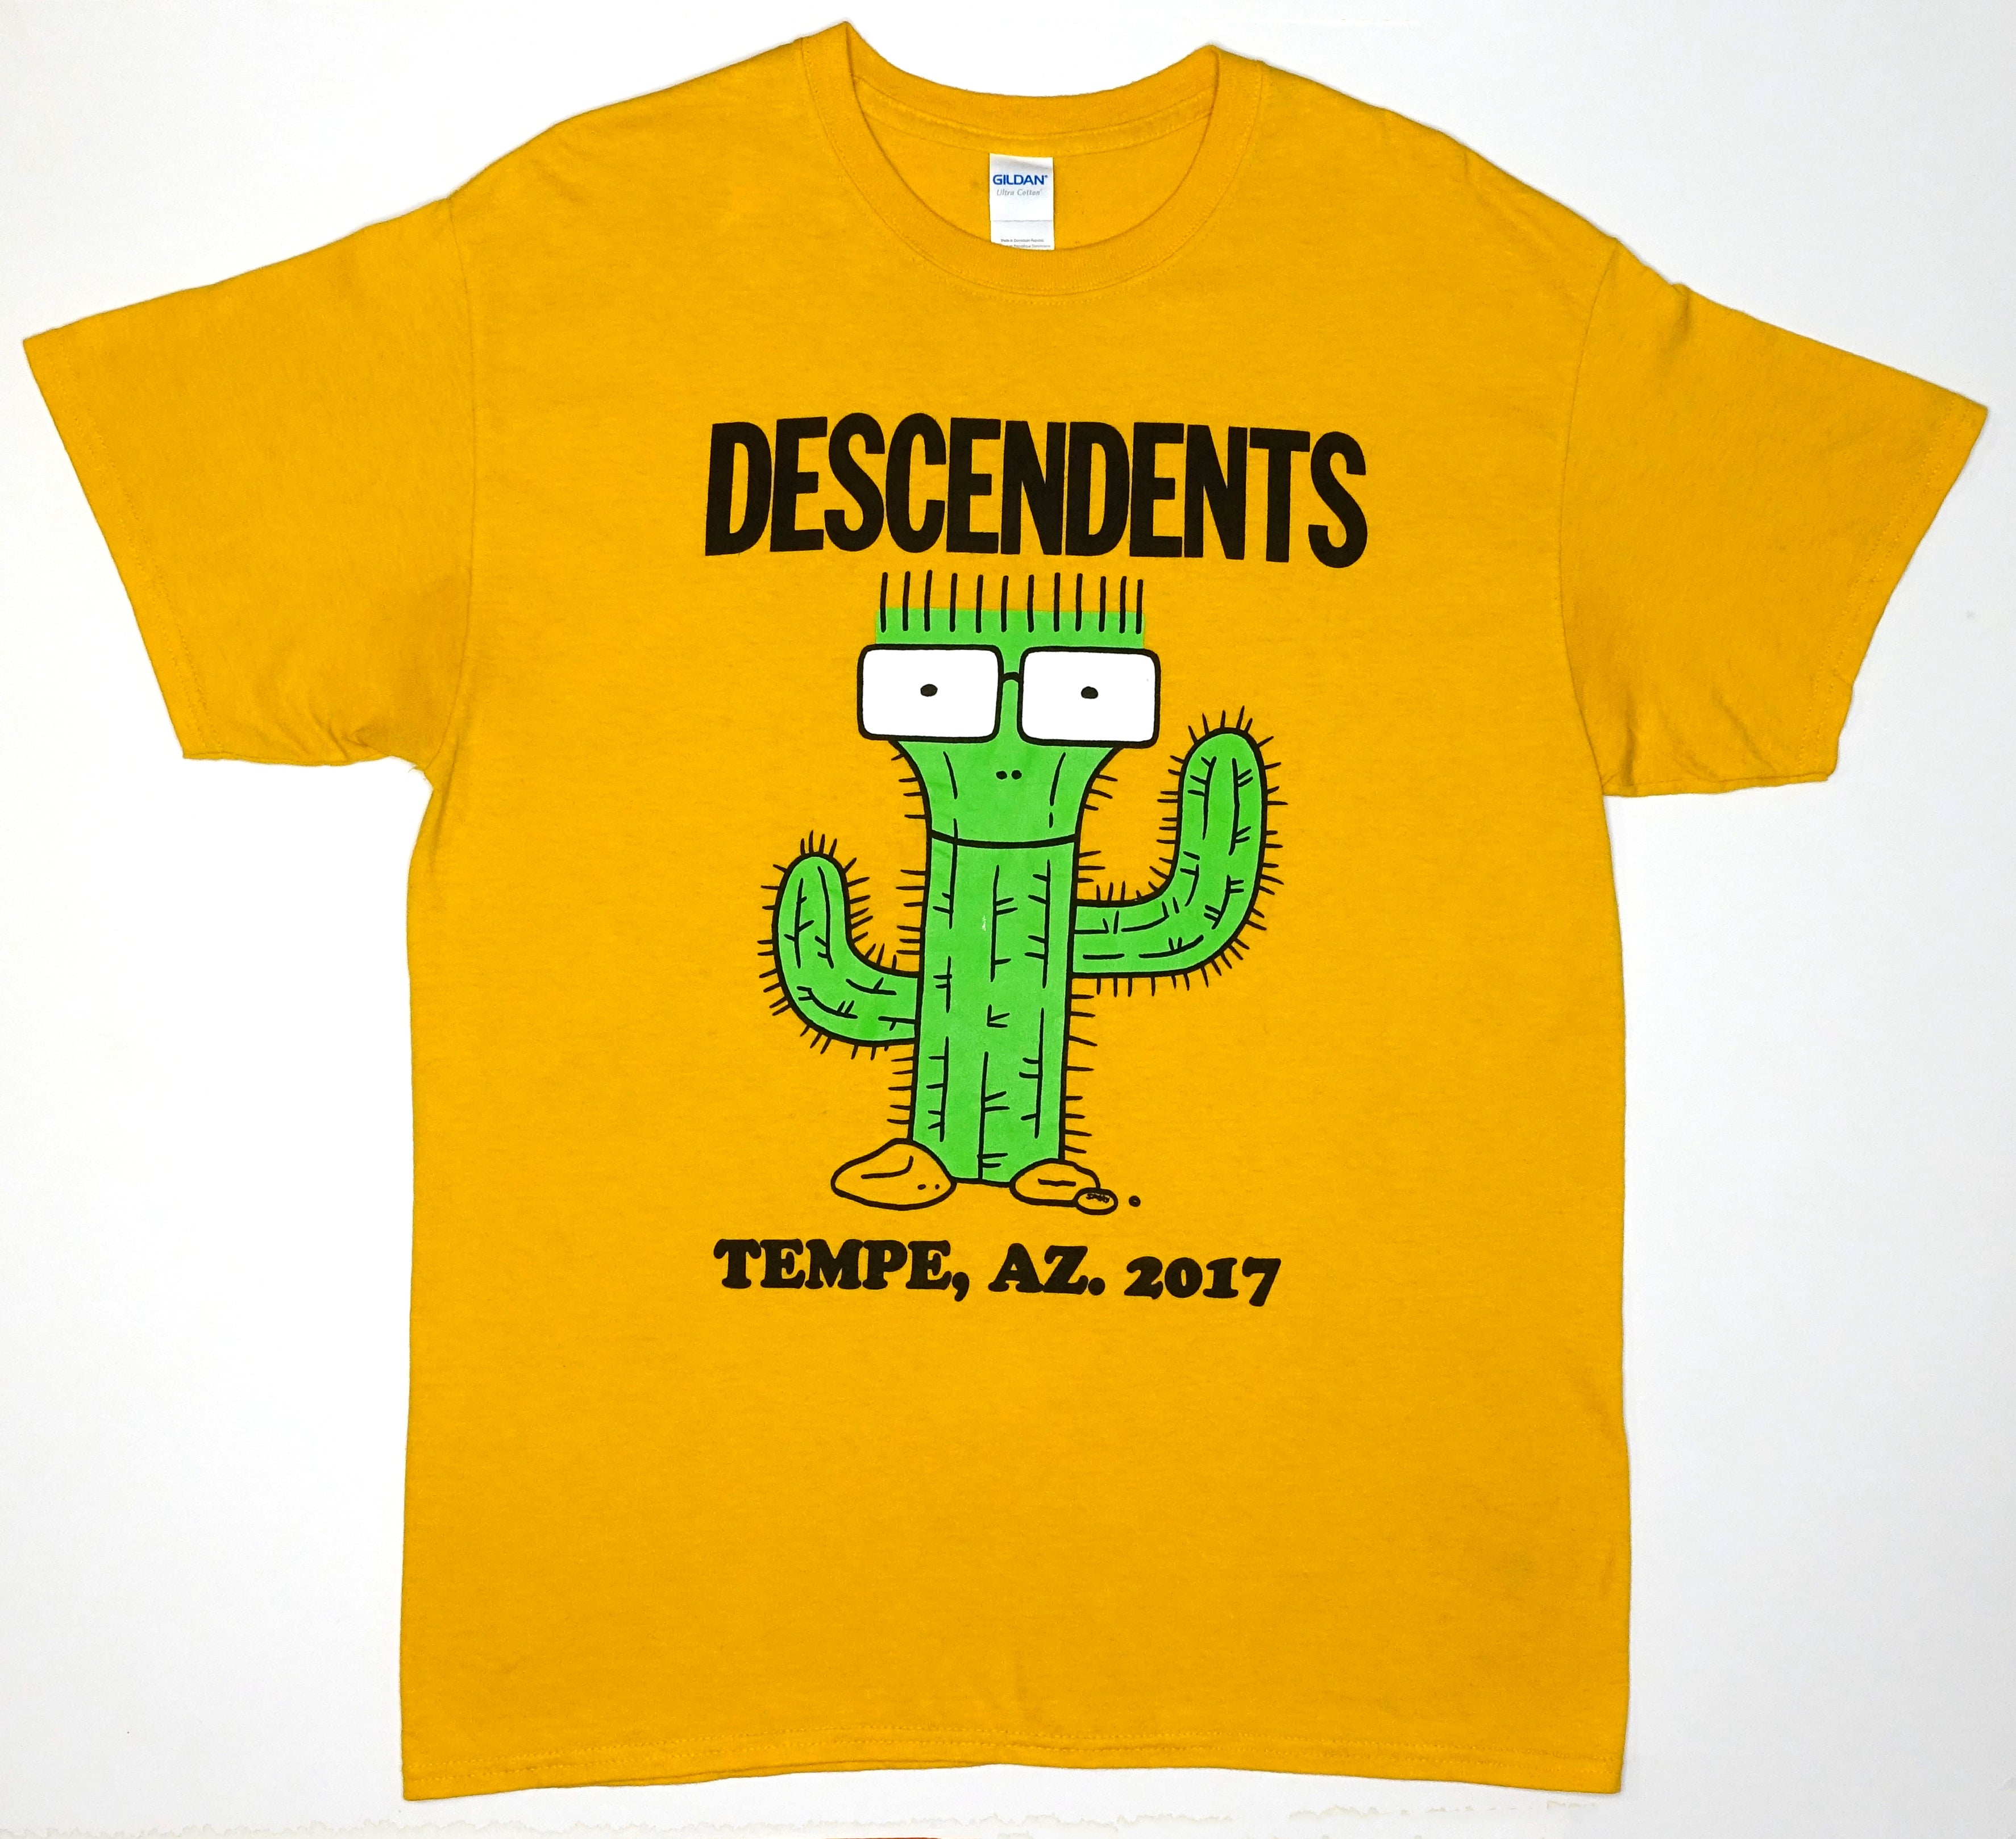 Descendents - Tempe, AZ 2017 Shirt Size Large